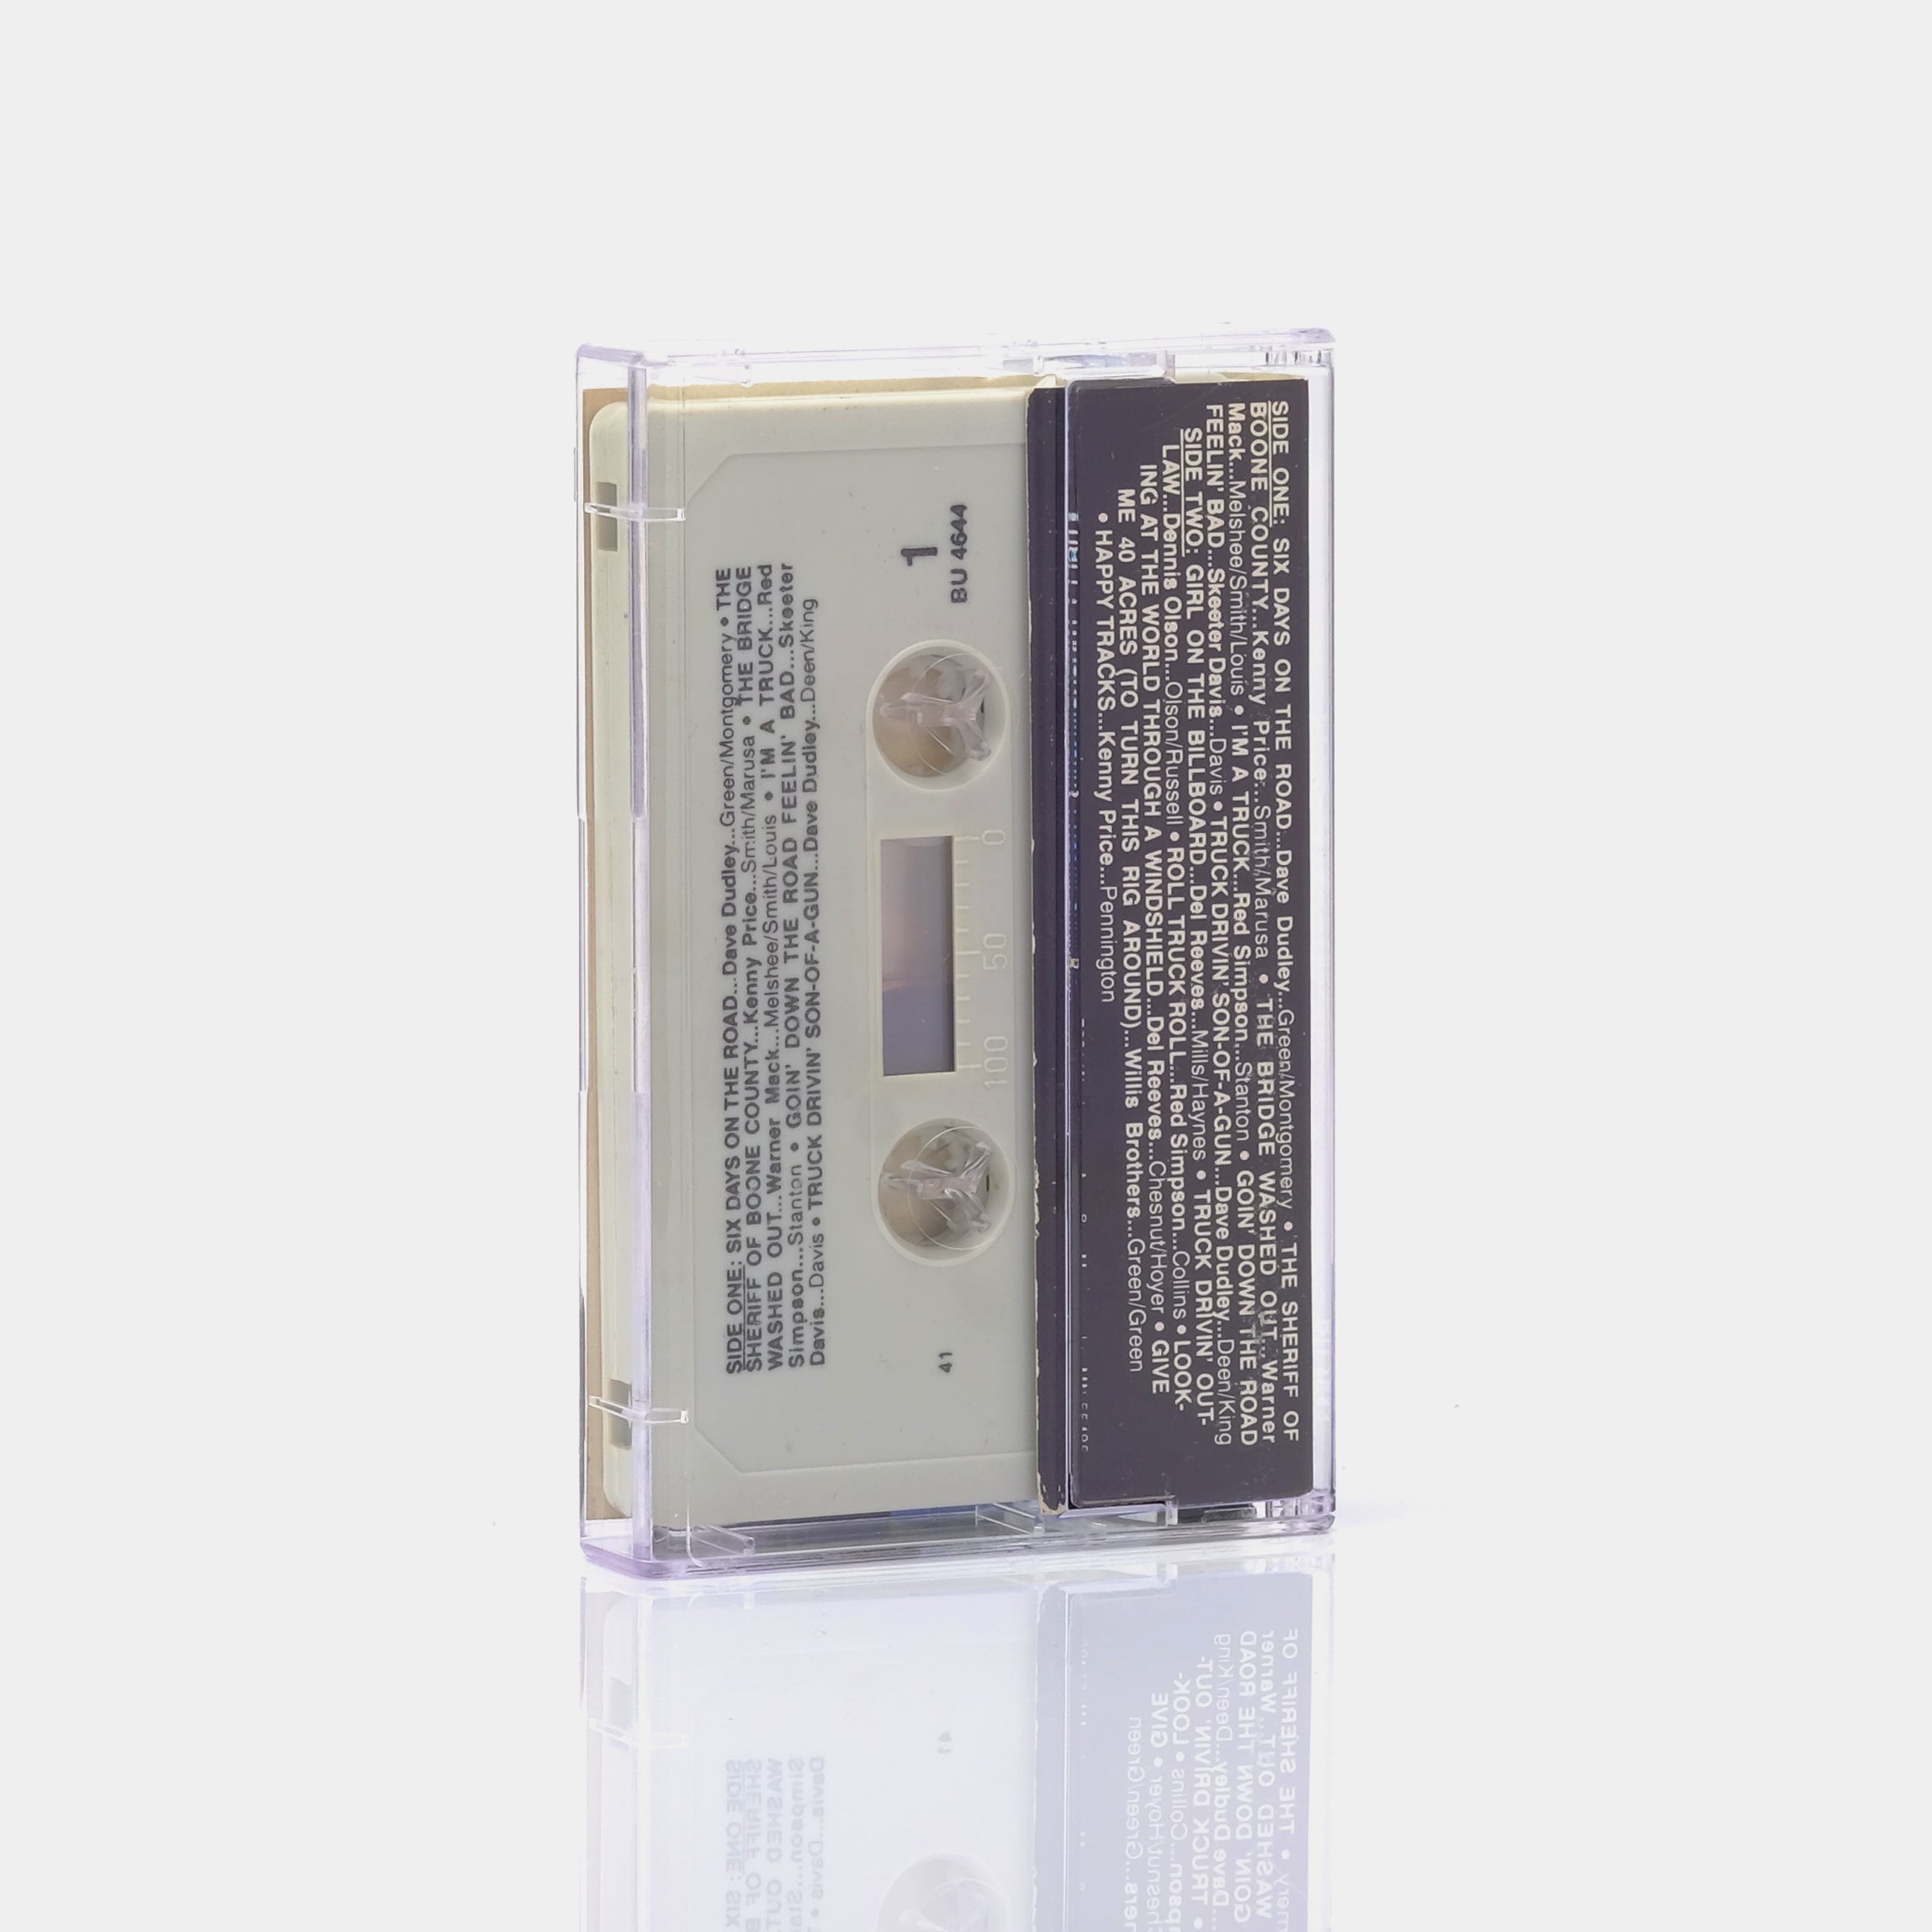 Truckstar Music Cassette Tape